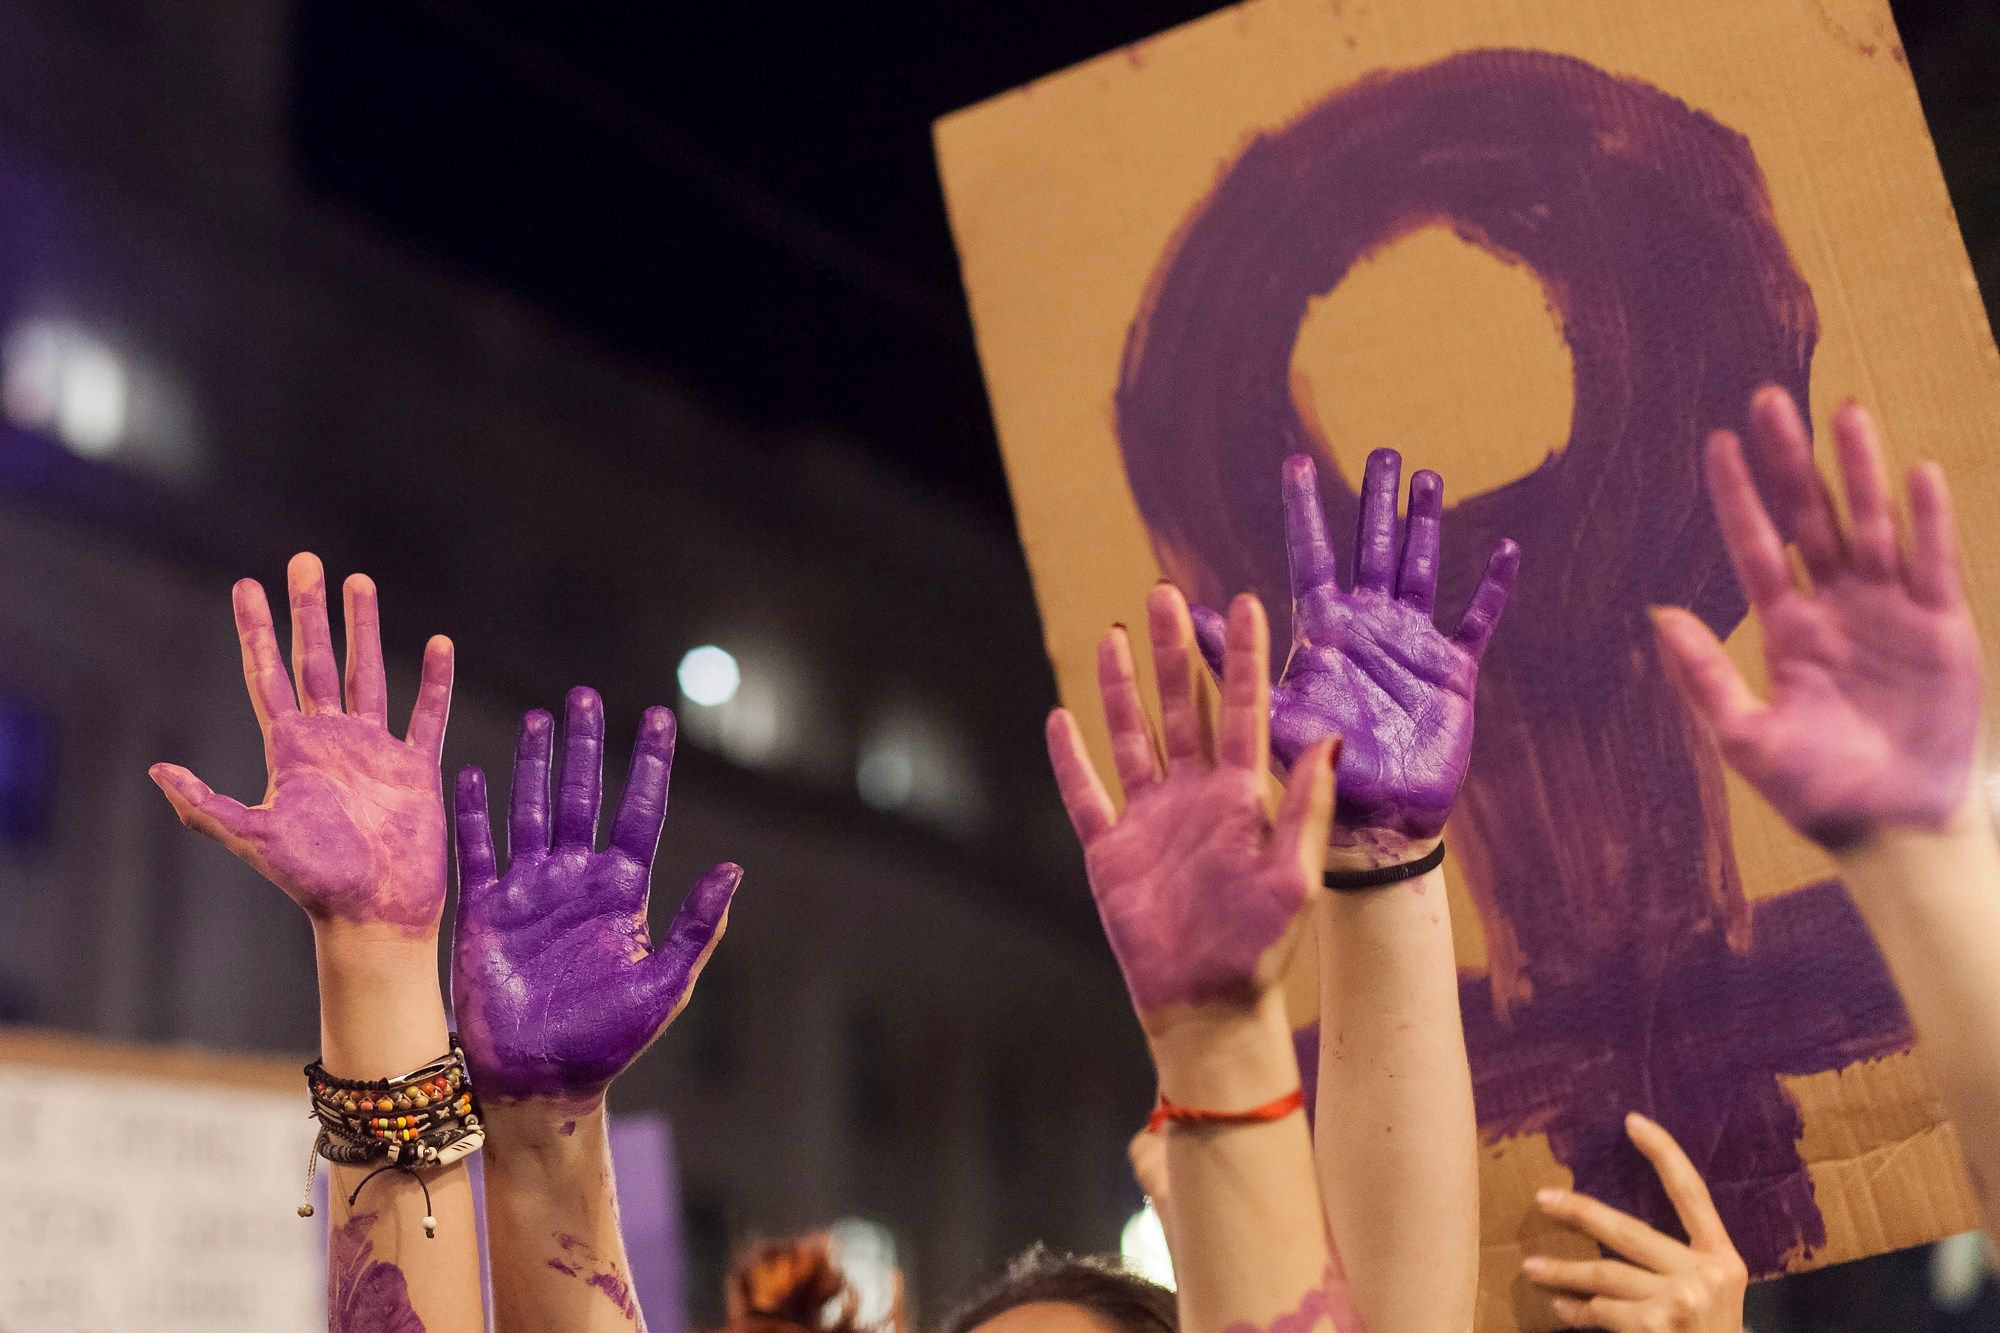 Imagen de unas manos manchadas con pintura morada en la manifestación del 8 de marzo de 2018 en Santa Cruz de Tenerife.